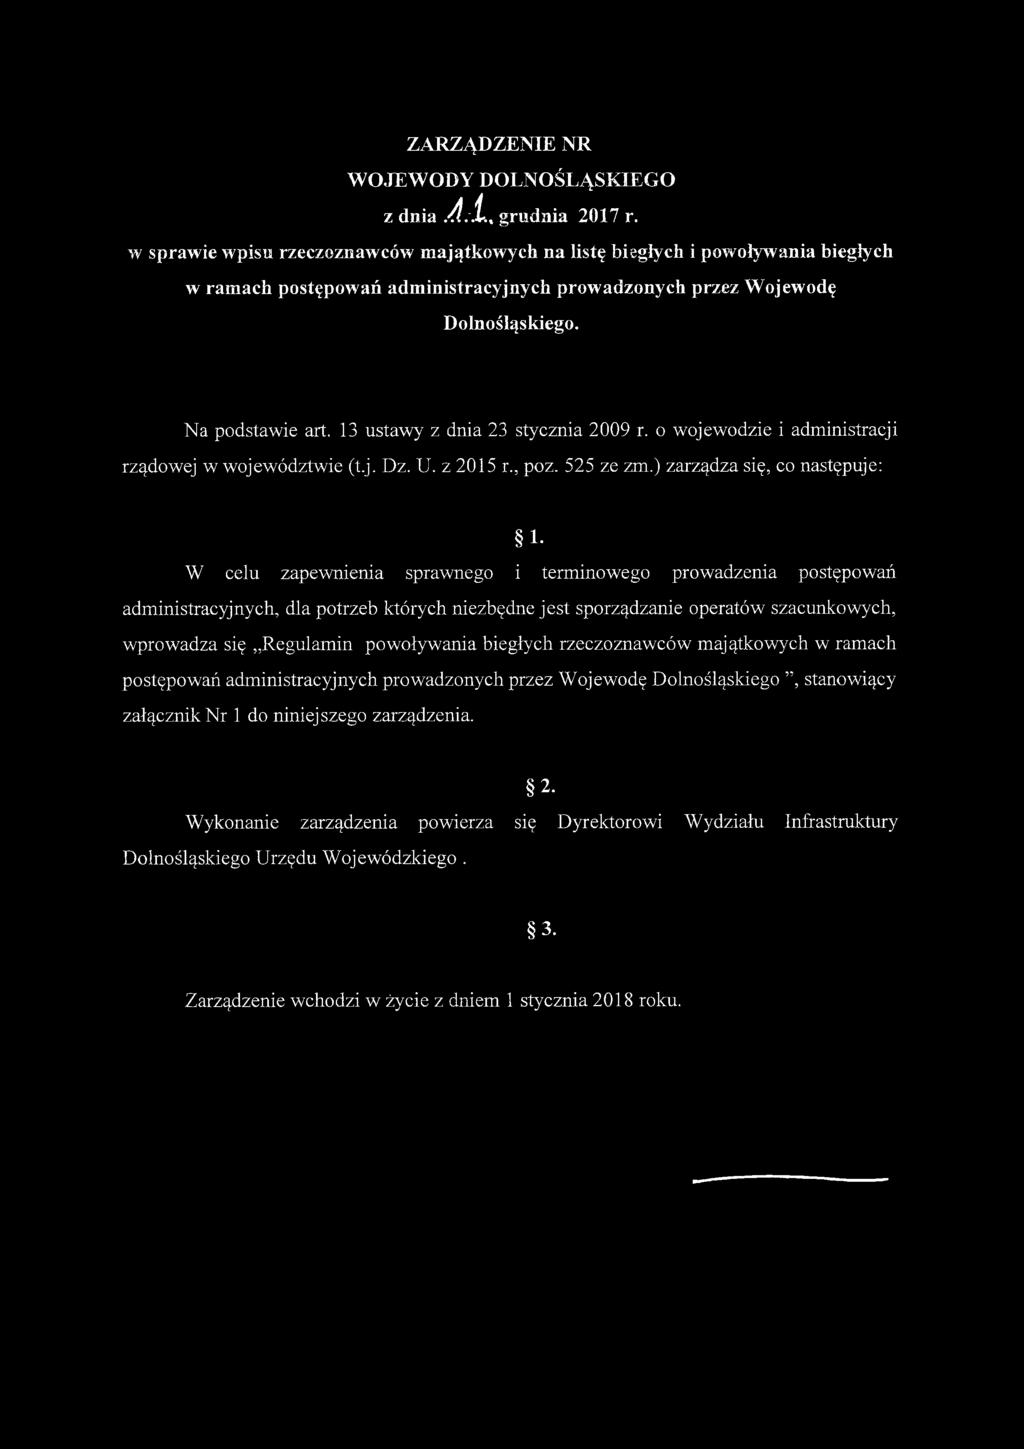 13 ustawy z dnia 23 stycznia 2009 r. o wojewodzie i administracji rządowej w województwie (t.j. Dz. U. z 2015 r., poz. 525 ze zm.